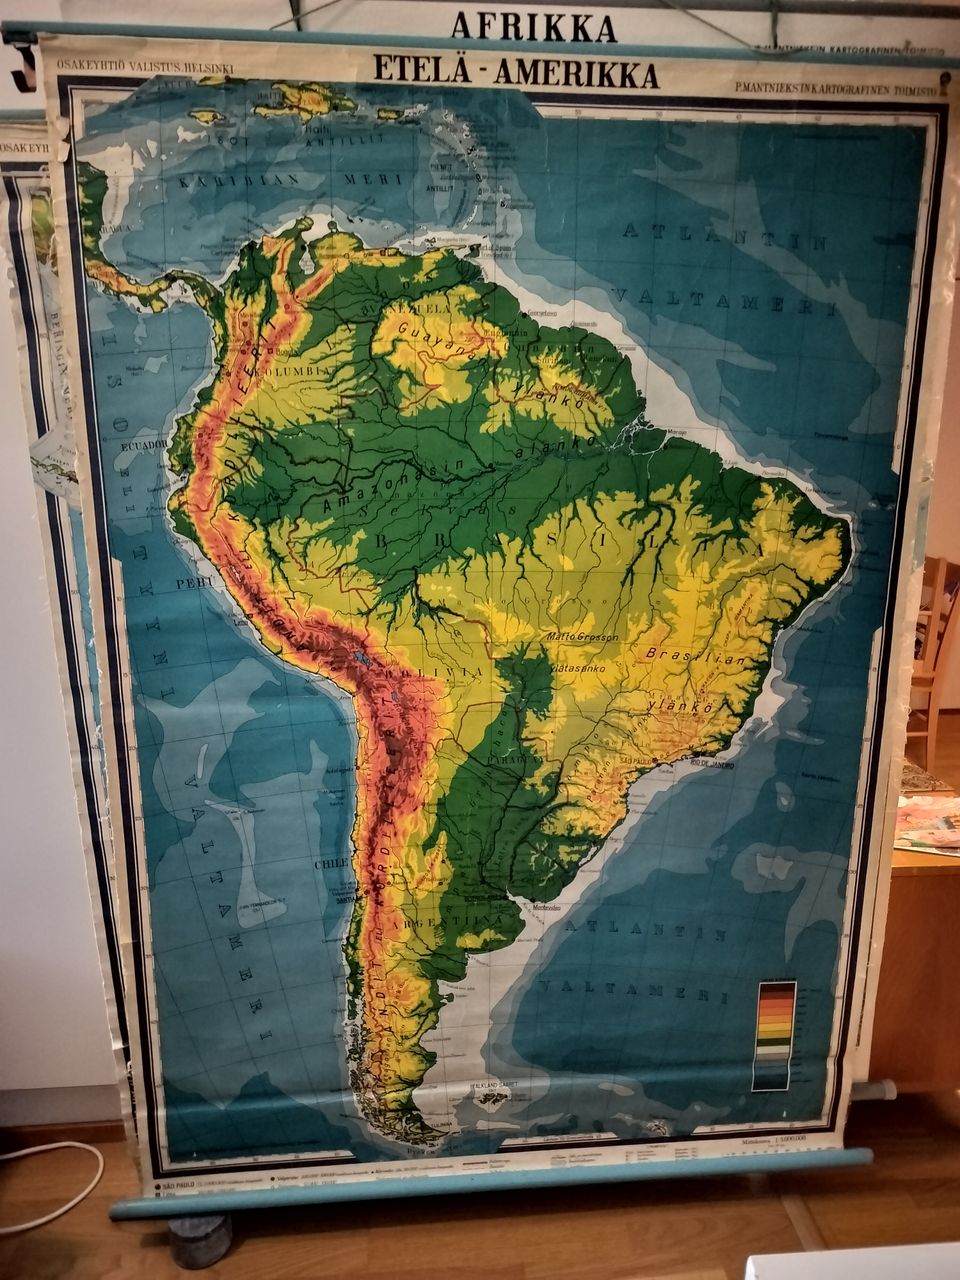 Etelä-Amerikan kartta lev.123 cm kork. 180 cm